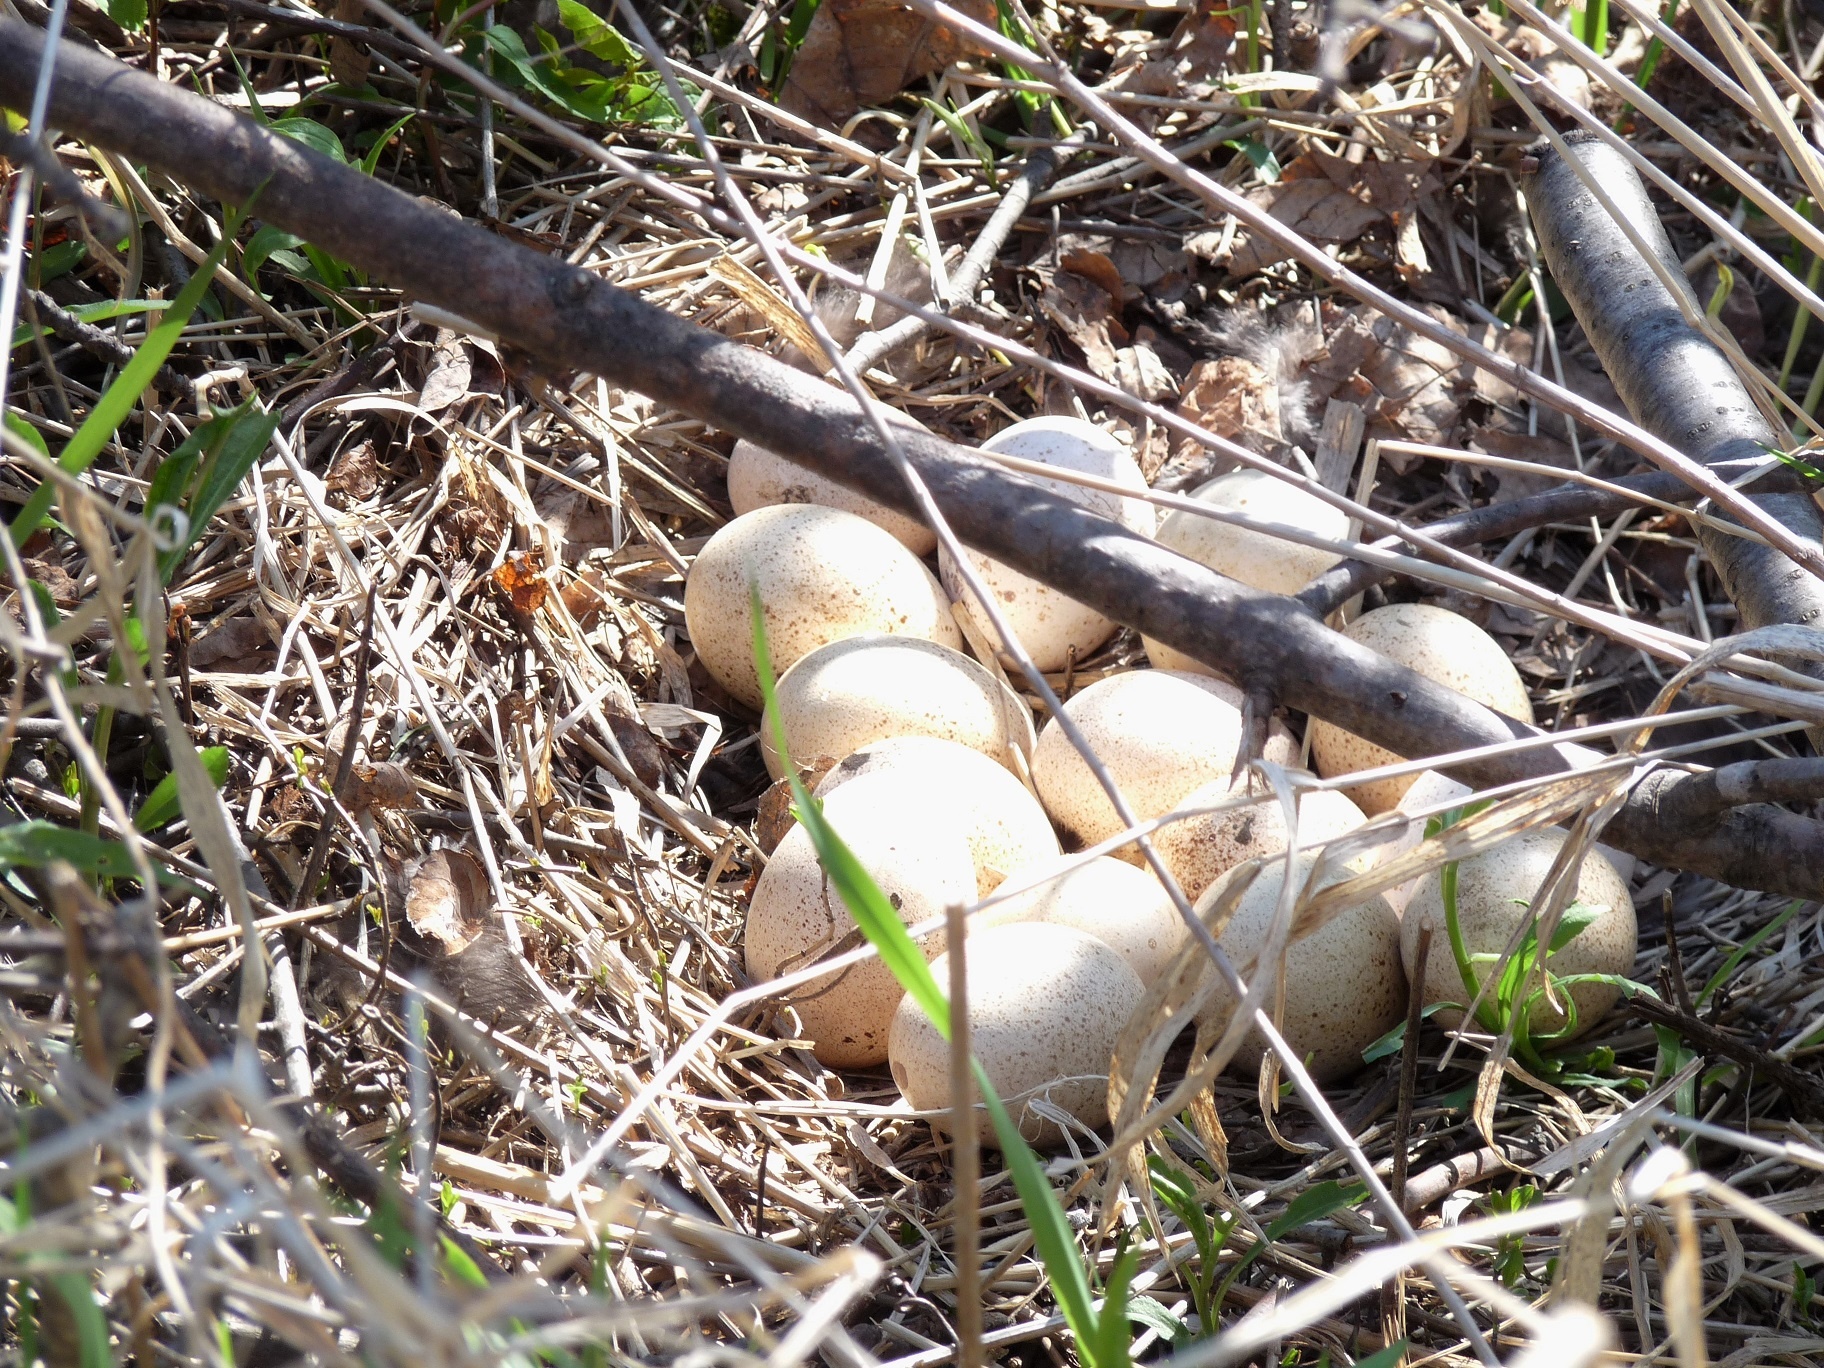 Fourteen wild turkey eggs in a nest